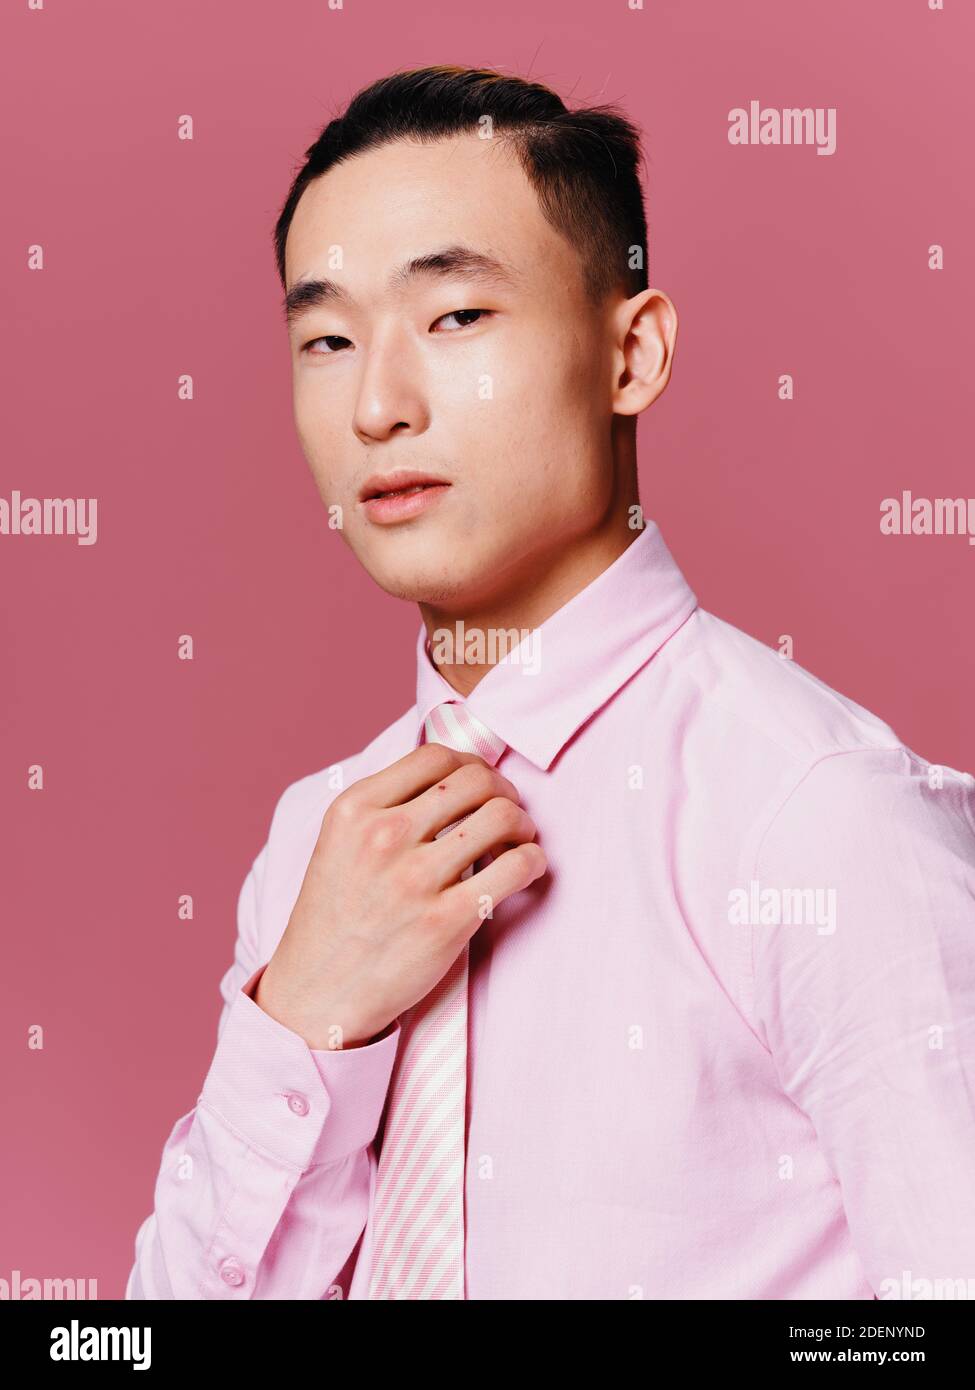 Asian Mann in rosa Hemd gerade seine Krawatte abgeschnitten Ansicht  Attraktiver rosa Hintergrund aussehen Stockfotografie - Alamy